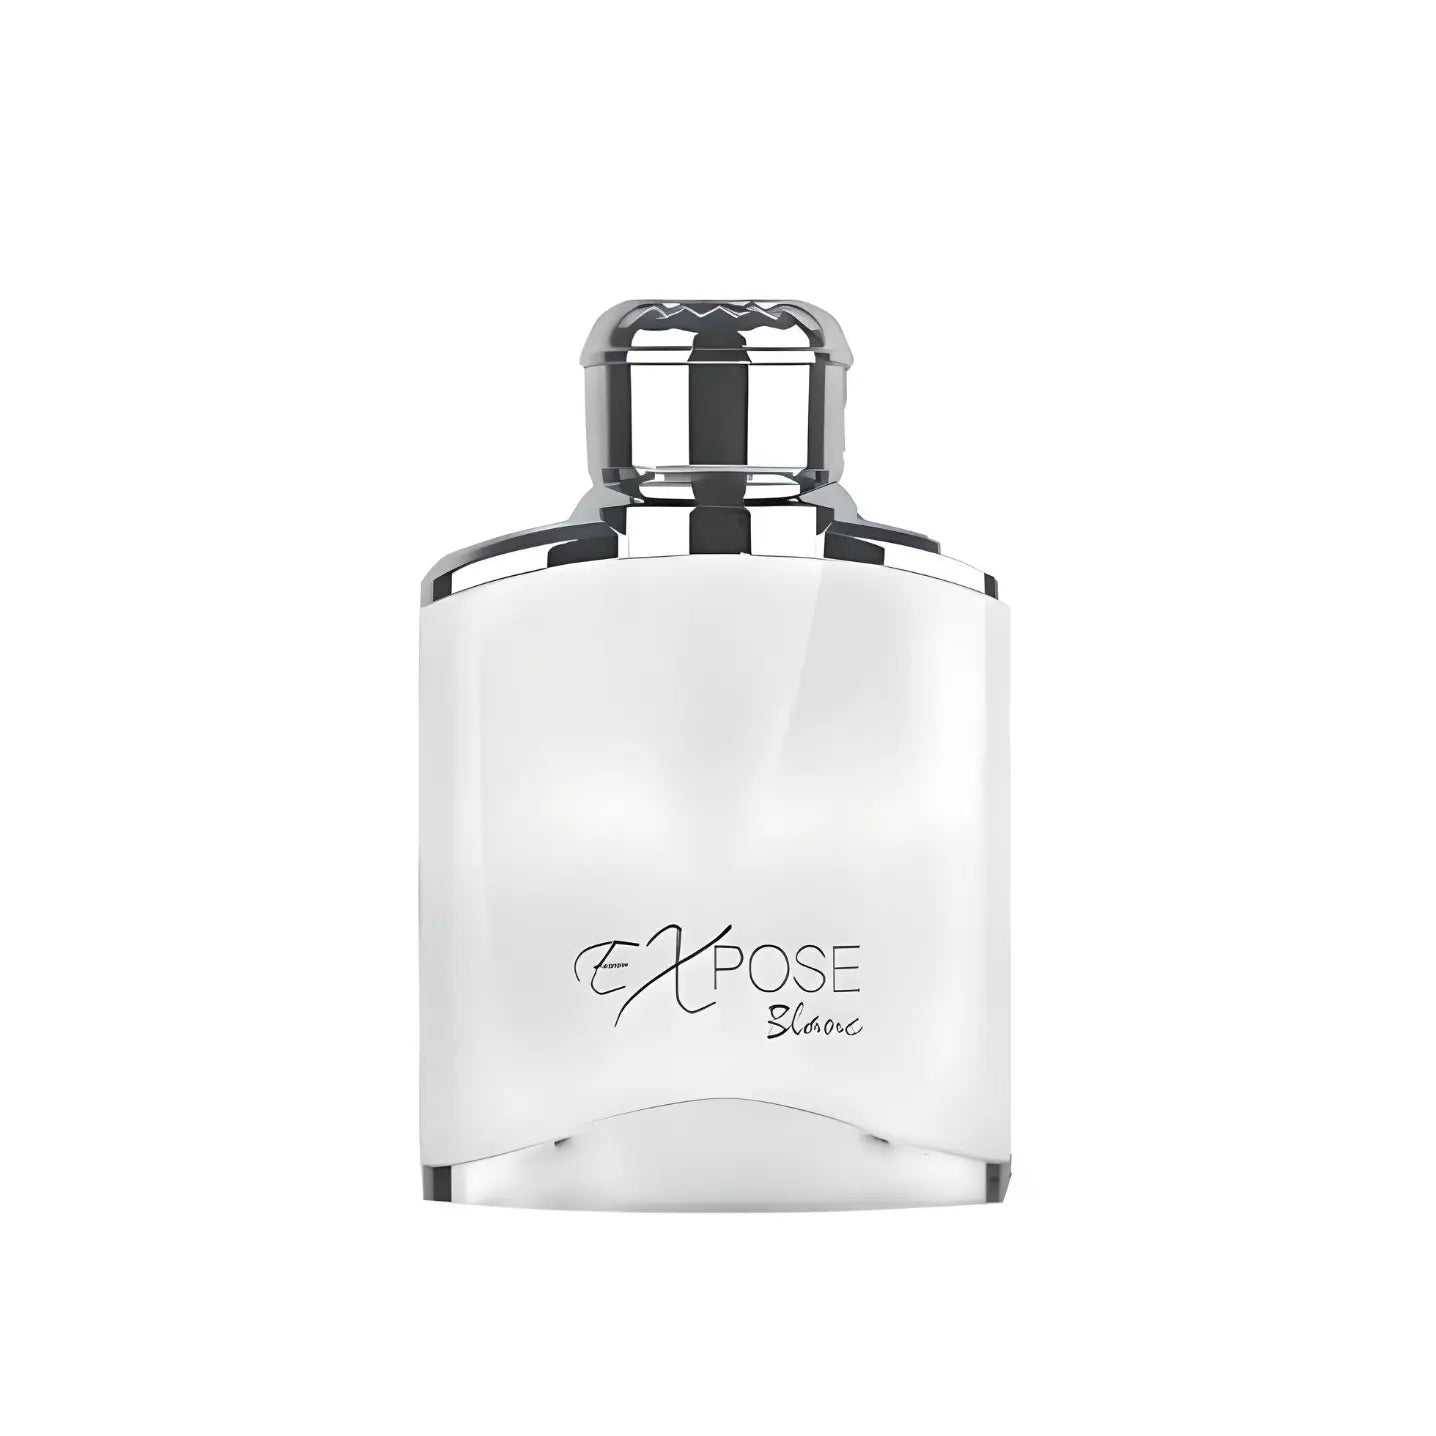 Expose Blanc Maison Alhambra Eau De Parfum - 100ml 3.4oz